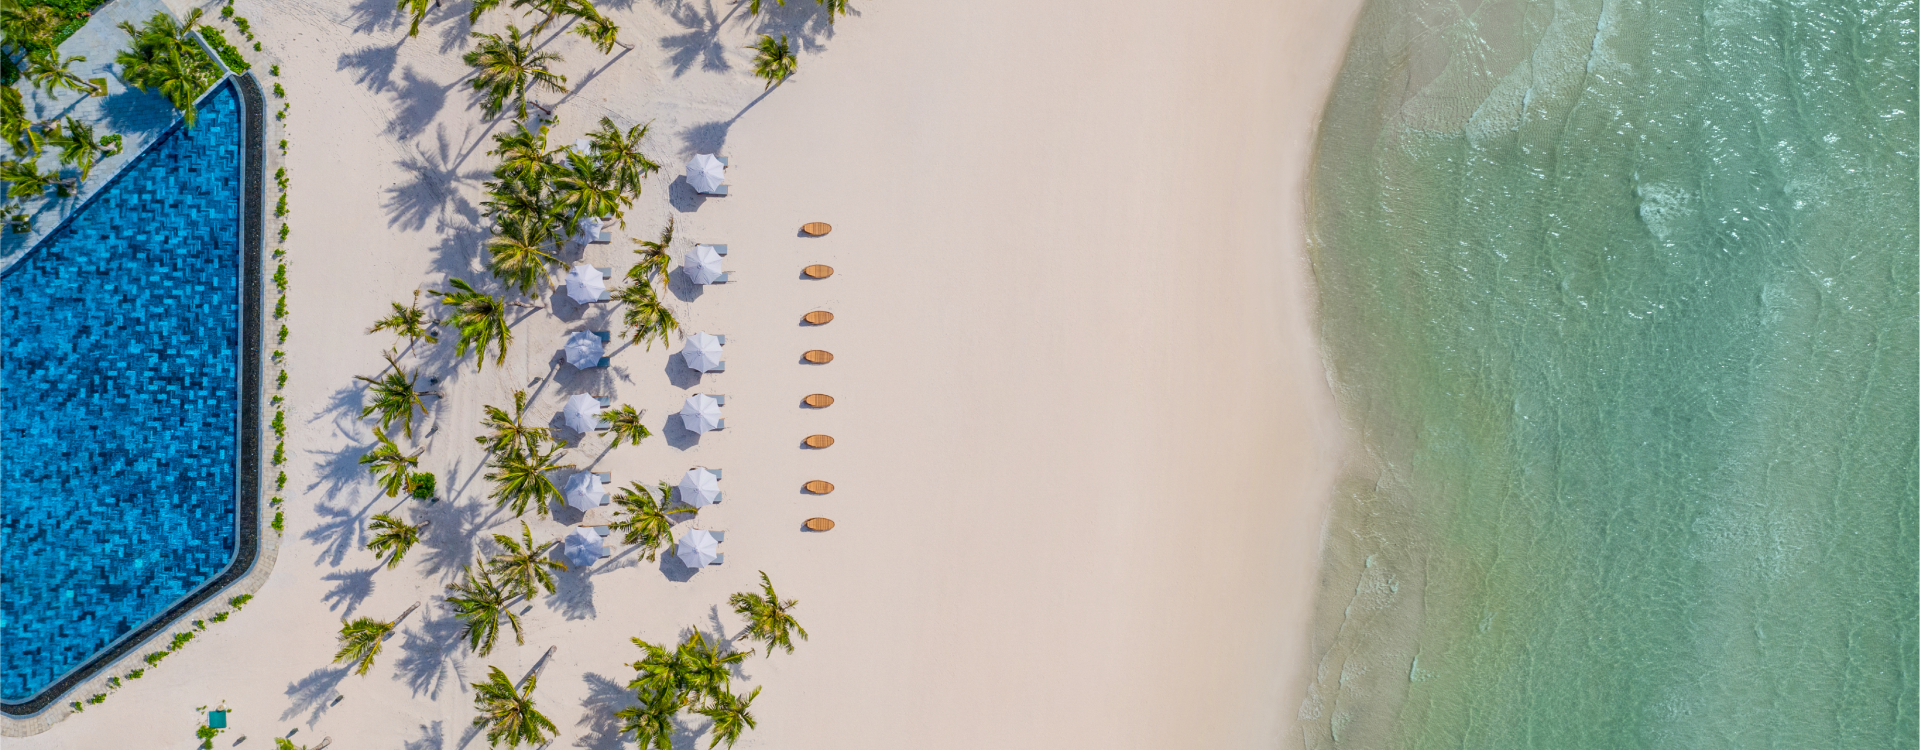 Tầm nhìn bao quát bãi biển, cát trắng với những chiếc dù trắng xếp thành hàng tại Khu nghỉ dưỡng New World Phú Quốc.